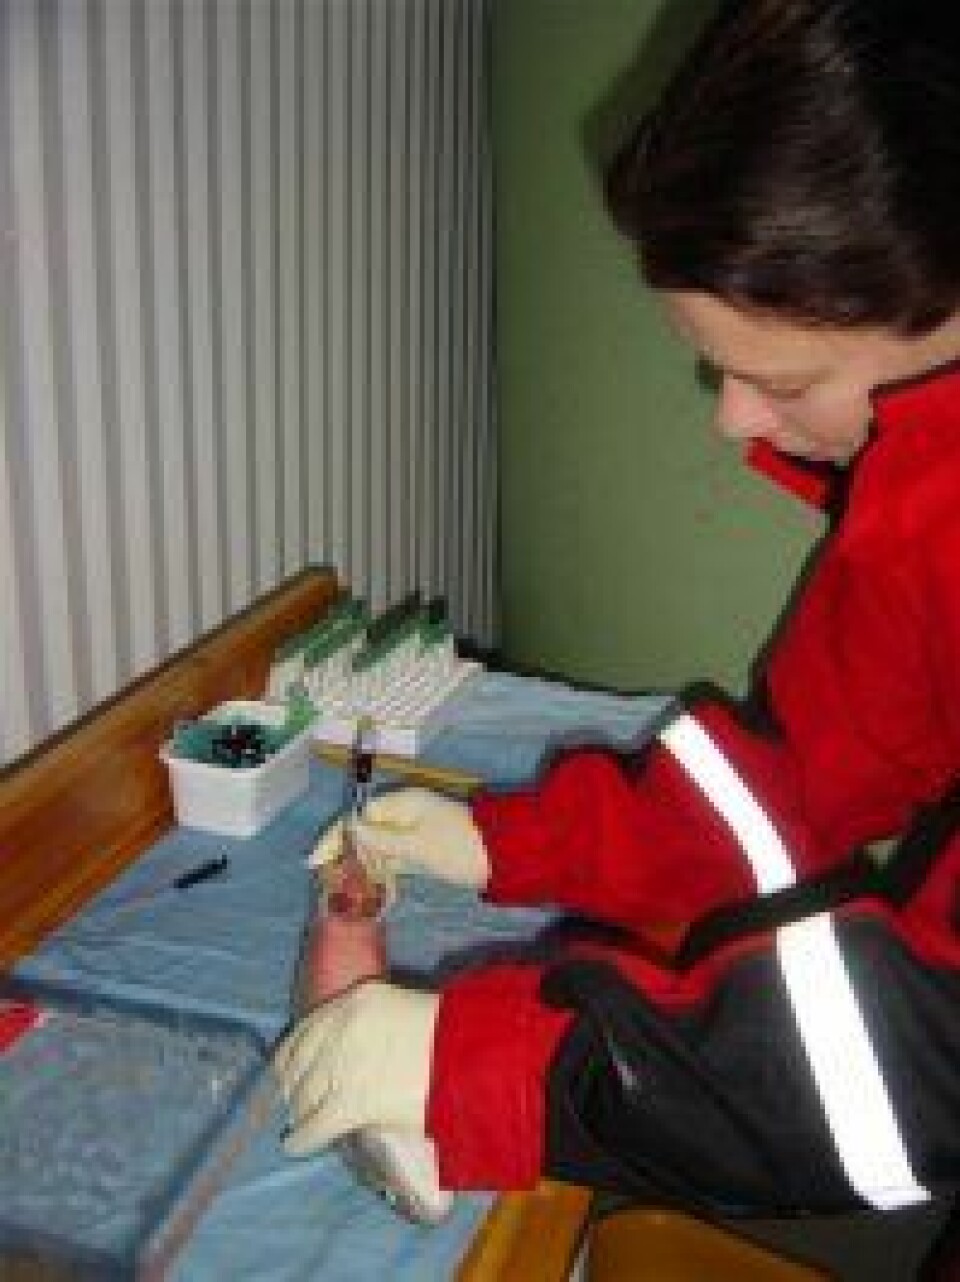 'Linda Hansen tar blodprøve av røye for å analysere for kjønnshormon-nivå. Når røya modner skyter nivåene av bl.a. testosteron og estradiol i været, og samtidig kan fisken bli svært aggressiv. (Foto: L. Hansen)'